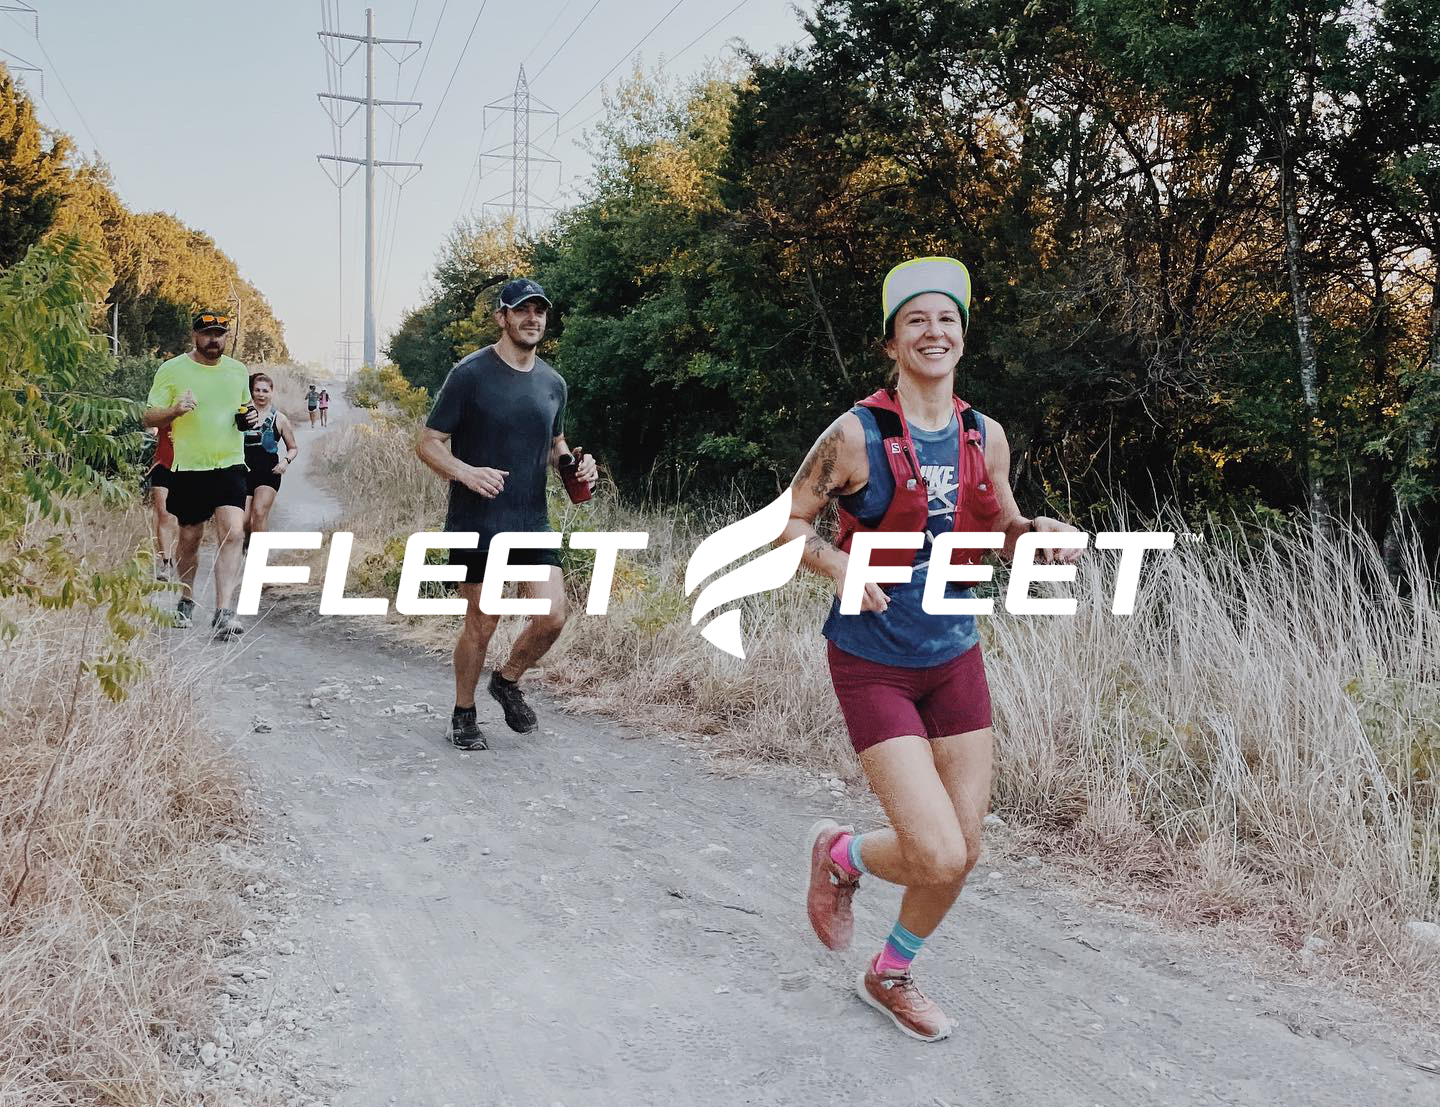 Fleet Feet to Fleet Feet Trail Run